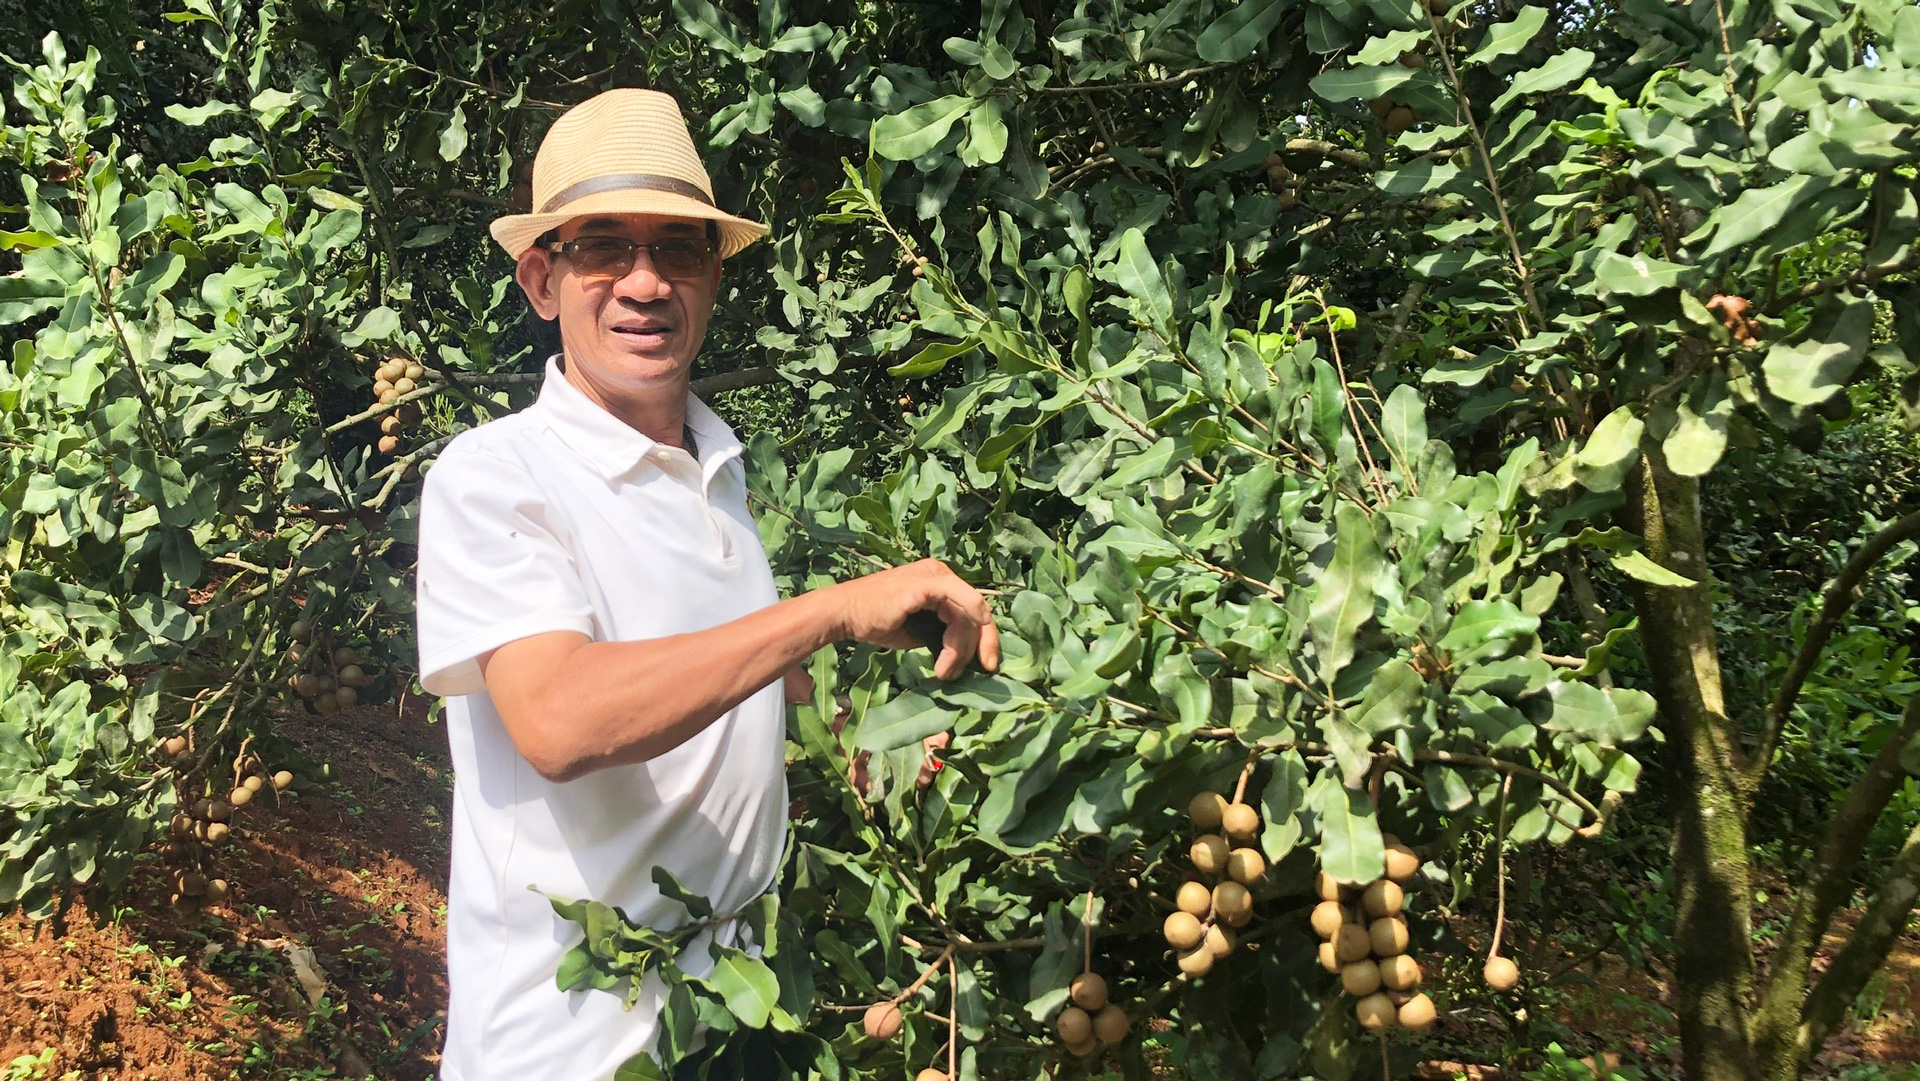 Ở một thôn khá giả tại Lâm Đồng, có ông Tuệ trưởng thôn đi đầu trồng mắc ca, bỏ túi hàng trăm triệu đồng- Ảnh 1.